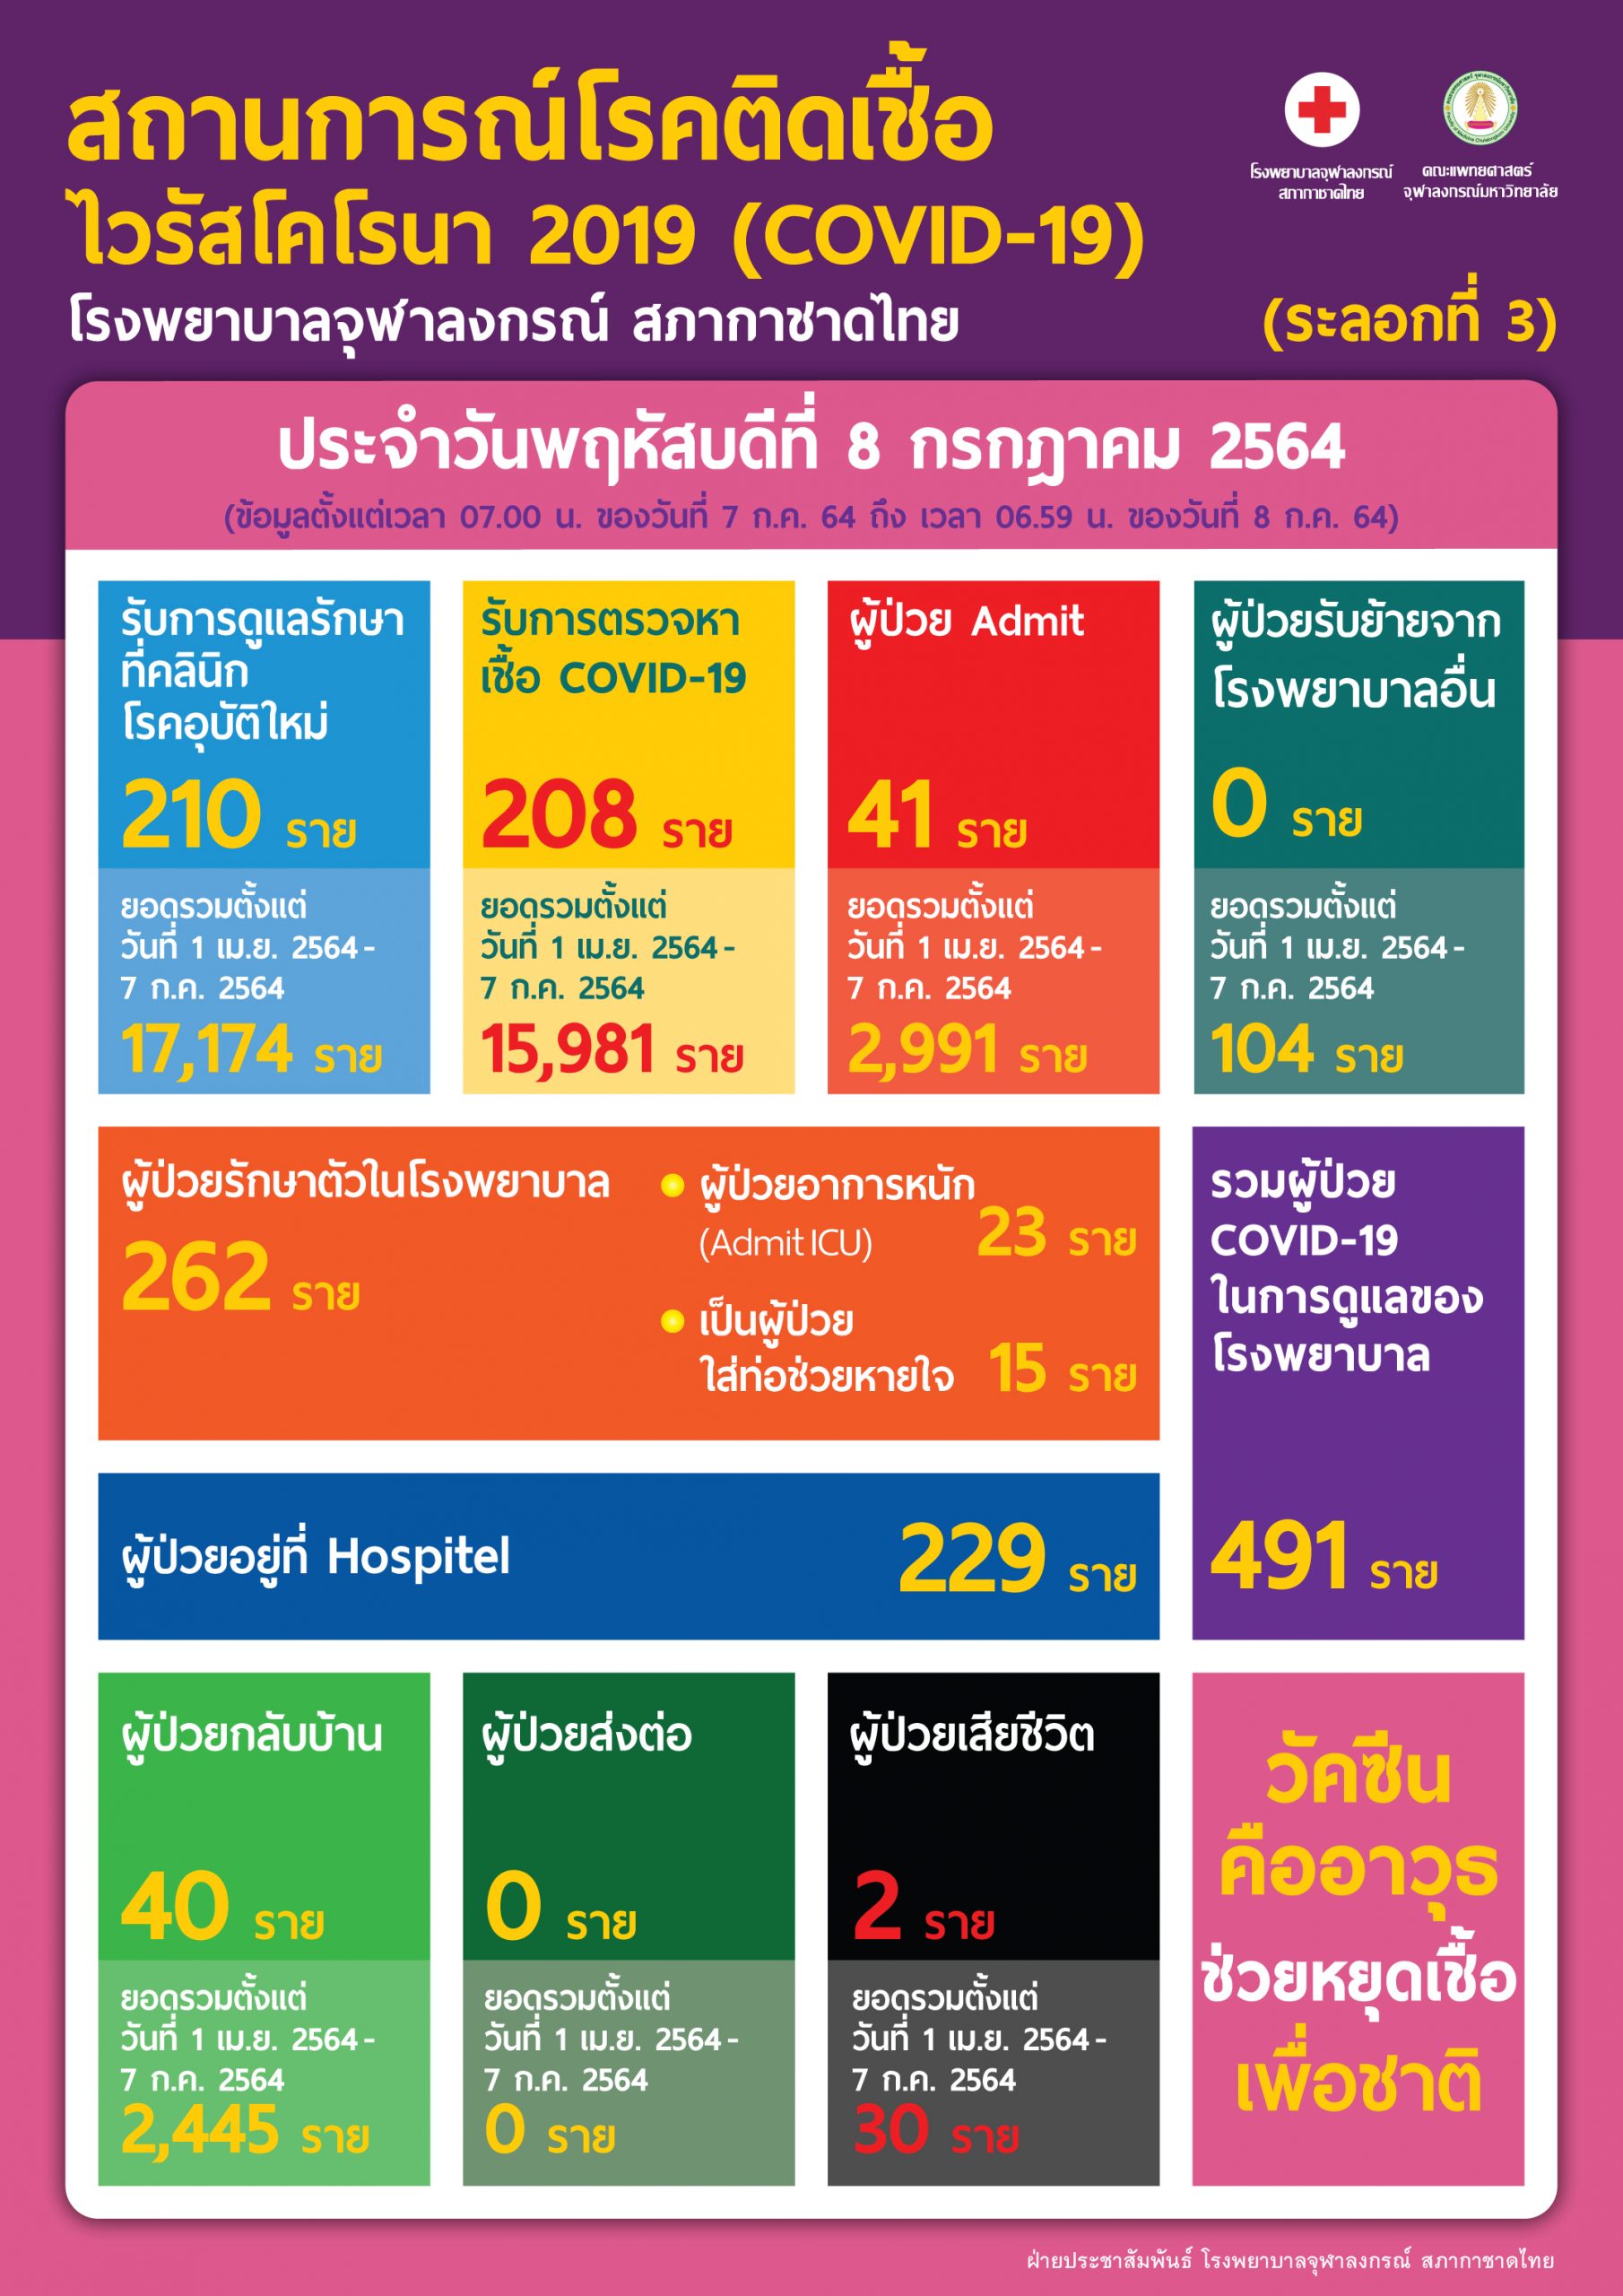 สถานการณ์โรคติดเชื้อไวรัสโคโรนา 2019 (COVID-19) (ระลอกที่ 3) โรงพยาบาลจุฬาลงกรณ์ สภากาชาดไทย  ประจำวันพฤหัสบดีที่ 8 กรกฎาคม 2564